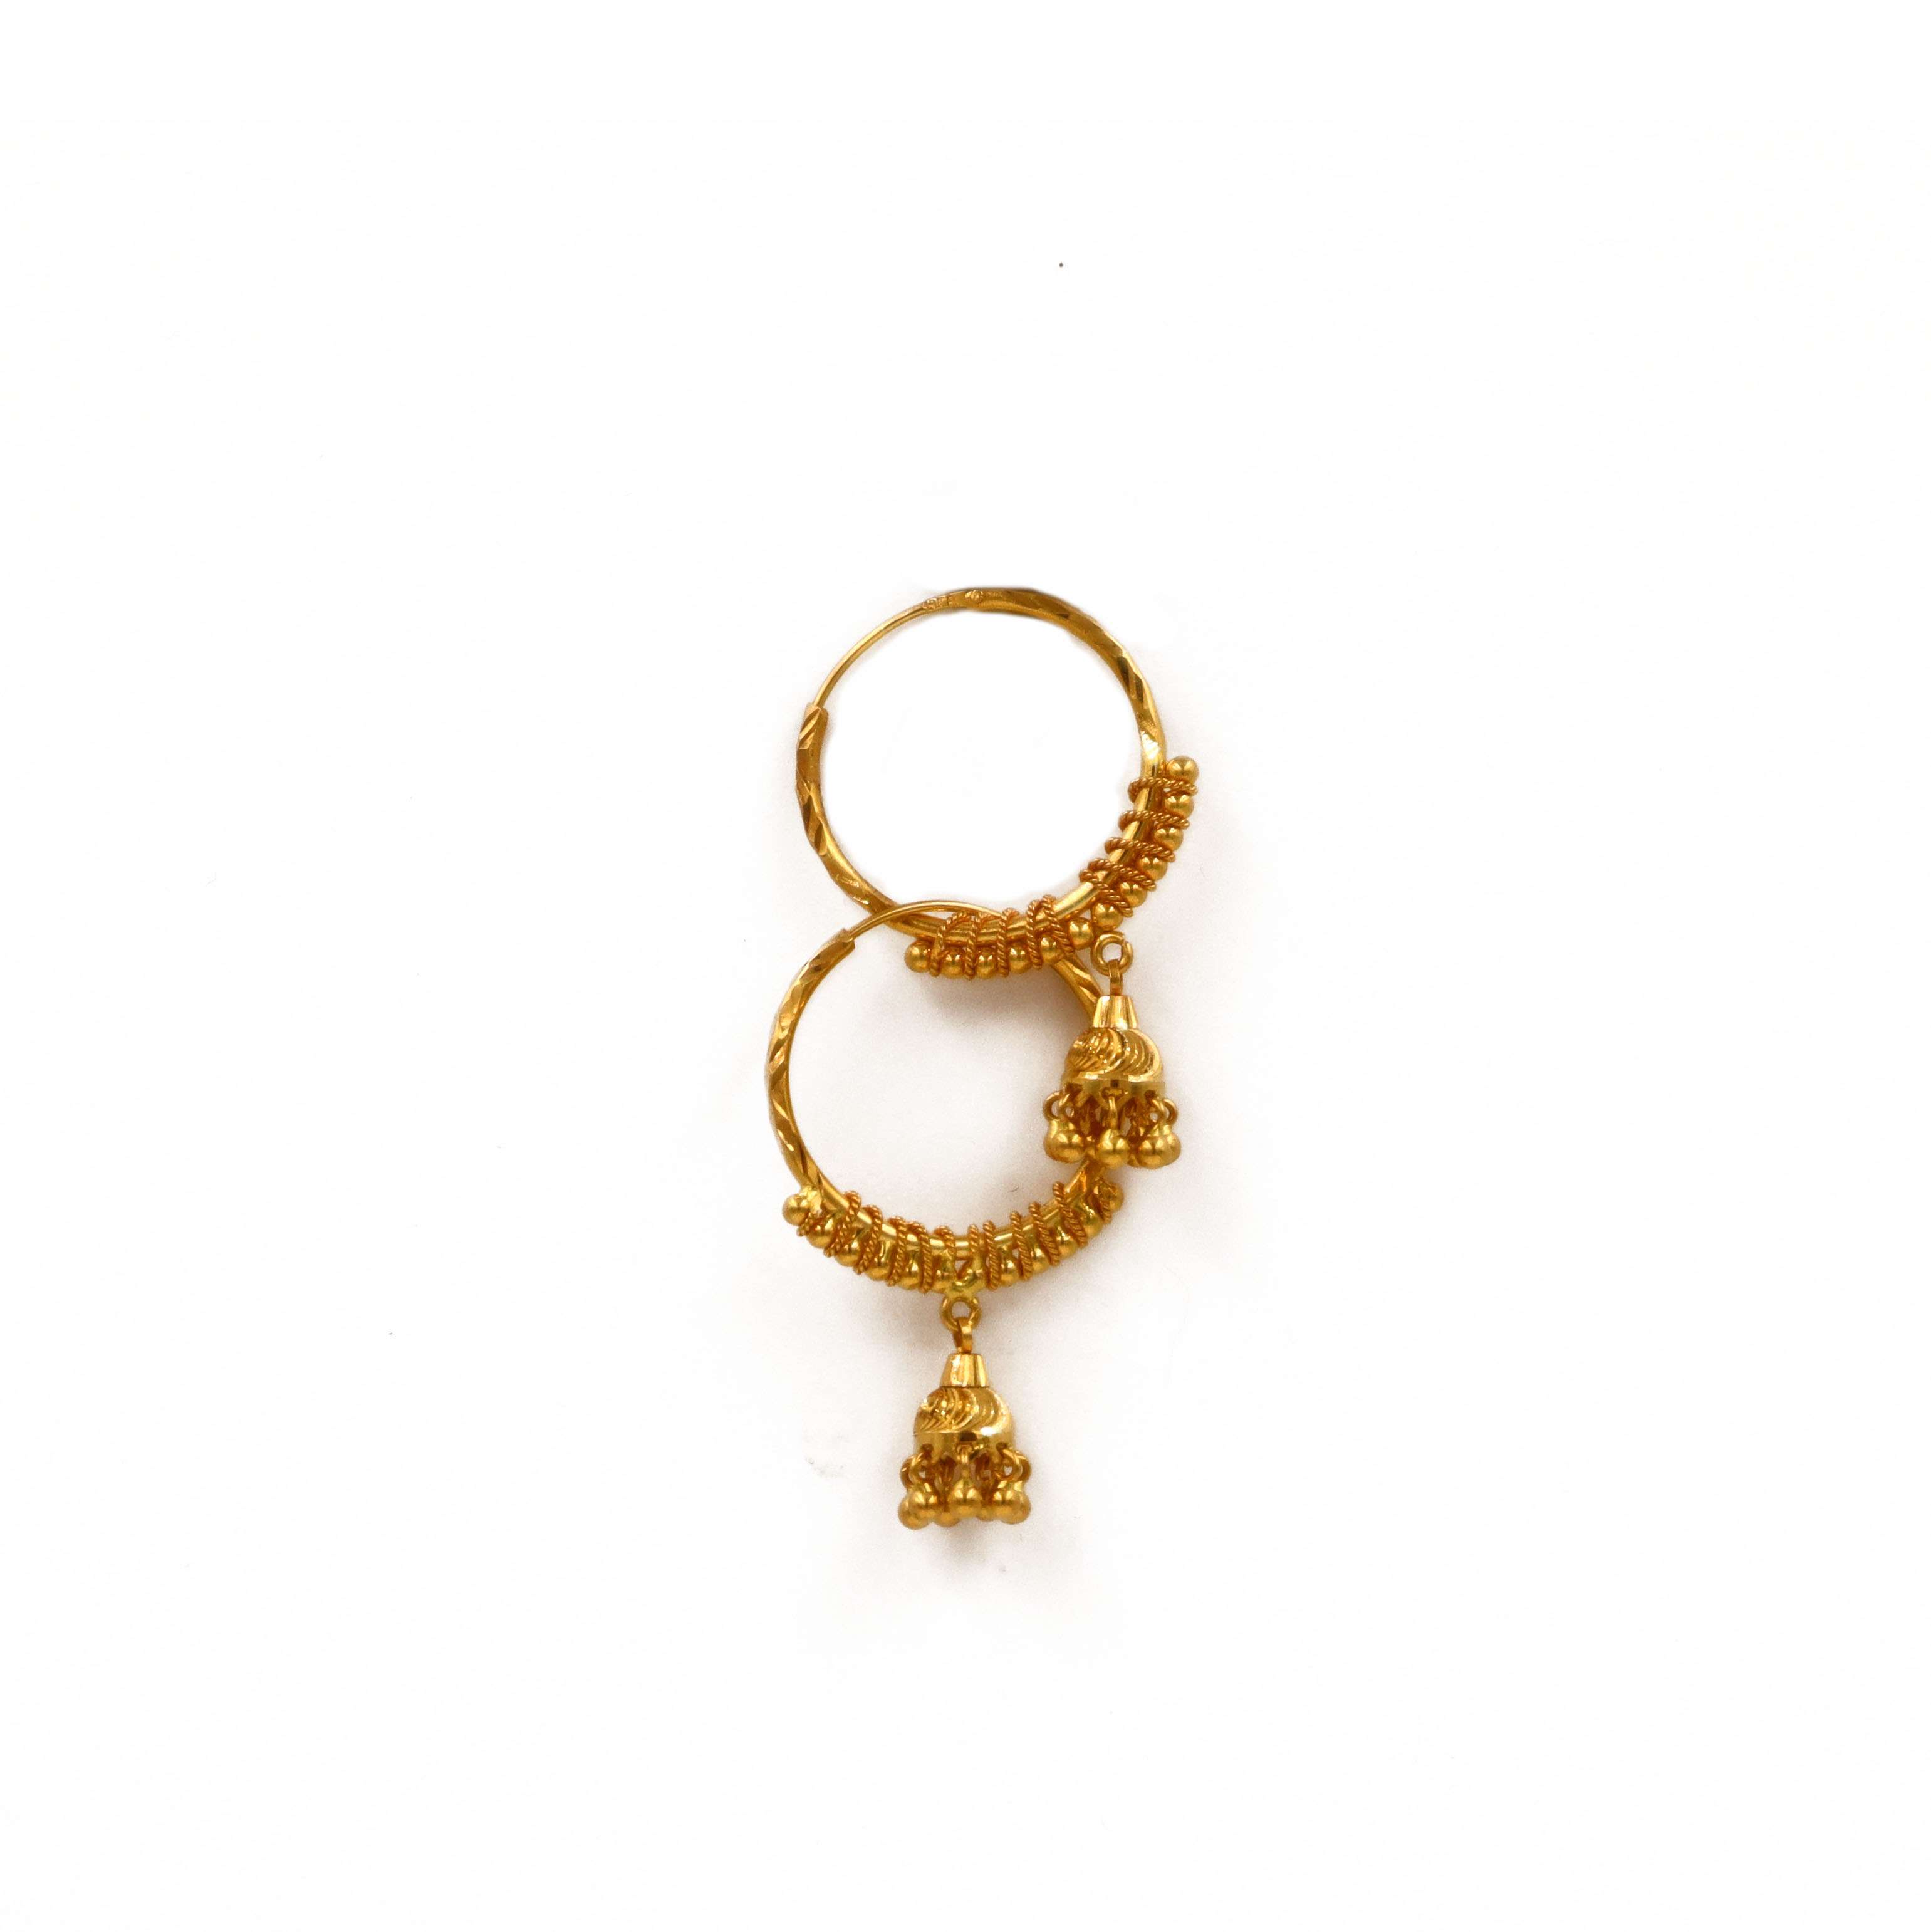 Latest Ring type earrings | Gold hoop earrings | Kalyan Jewellers